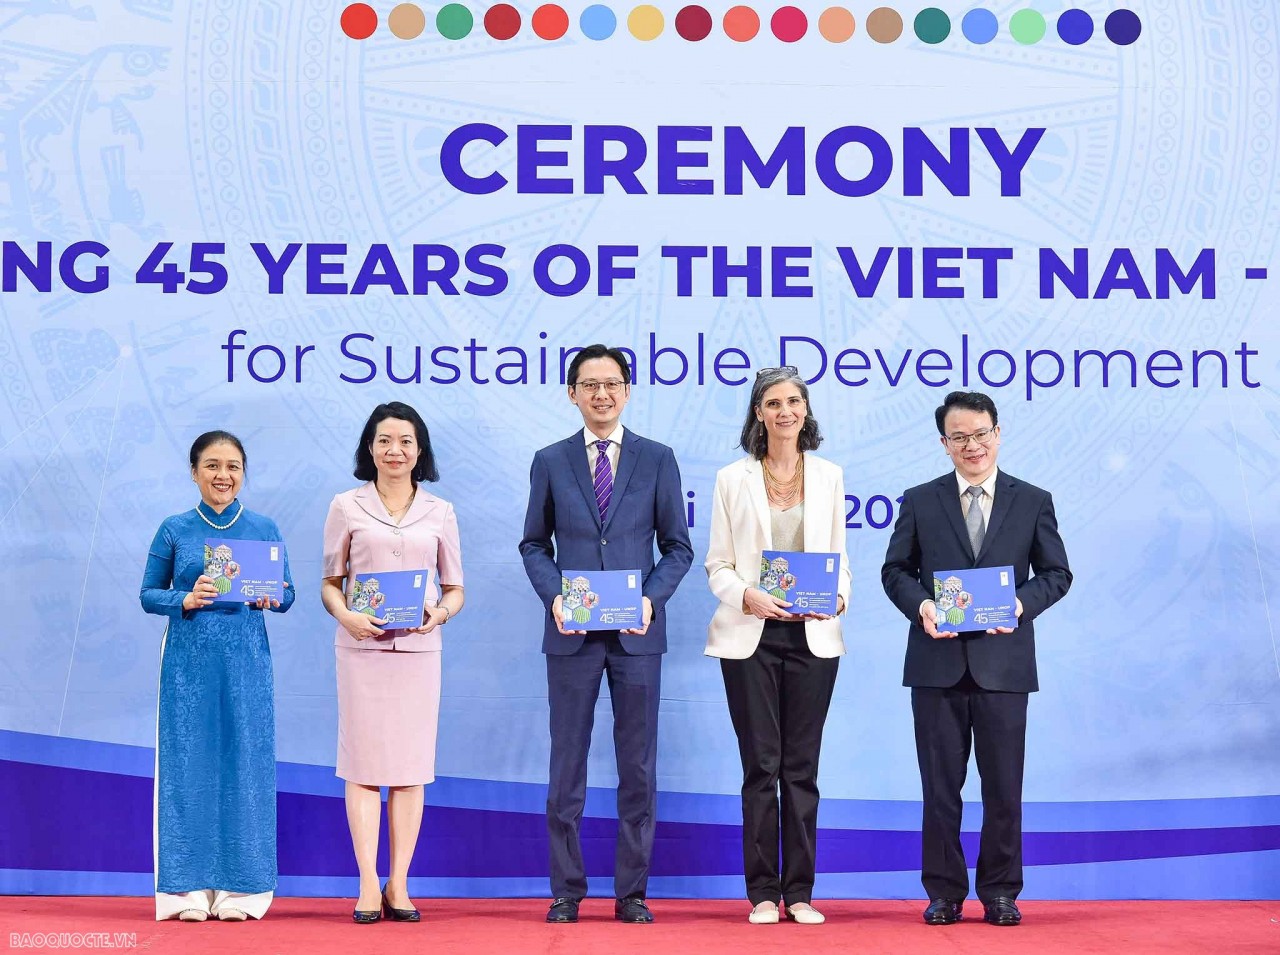 Trưởng đại diện thường trú UNDP tại Việt Nam trao Sách ảnh 45 năm quan hệ đối tác Việt Nam-UNDP vì Phát triển bền vững cho đại diện lãnh đạo các bộ, ngành (Ảnh: baoquocte.vn).